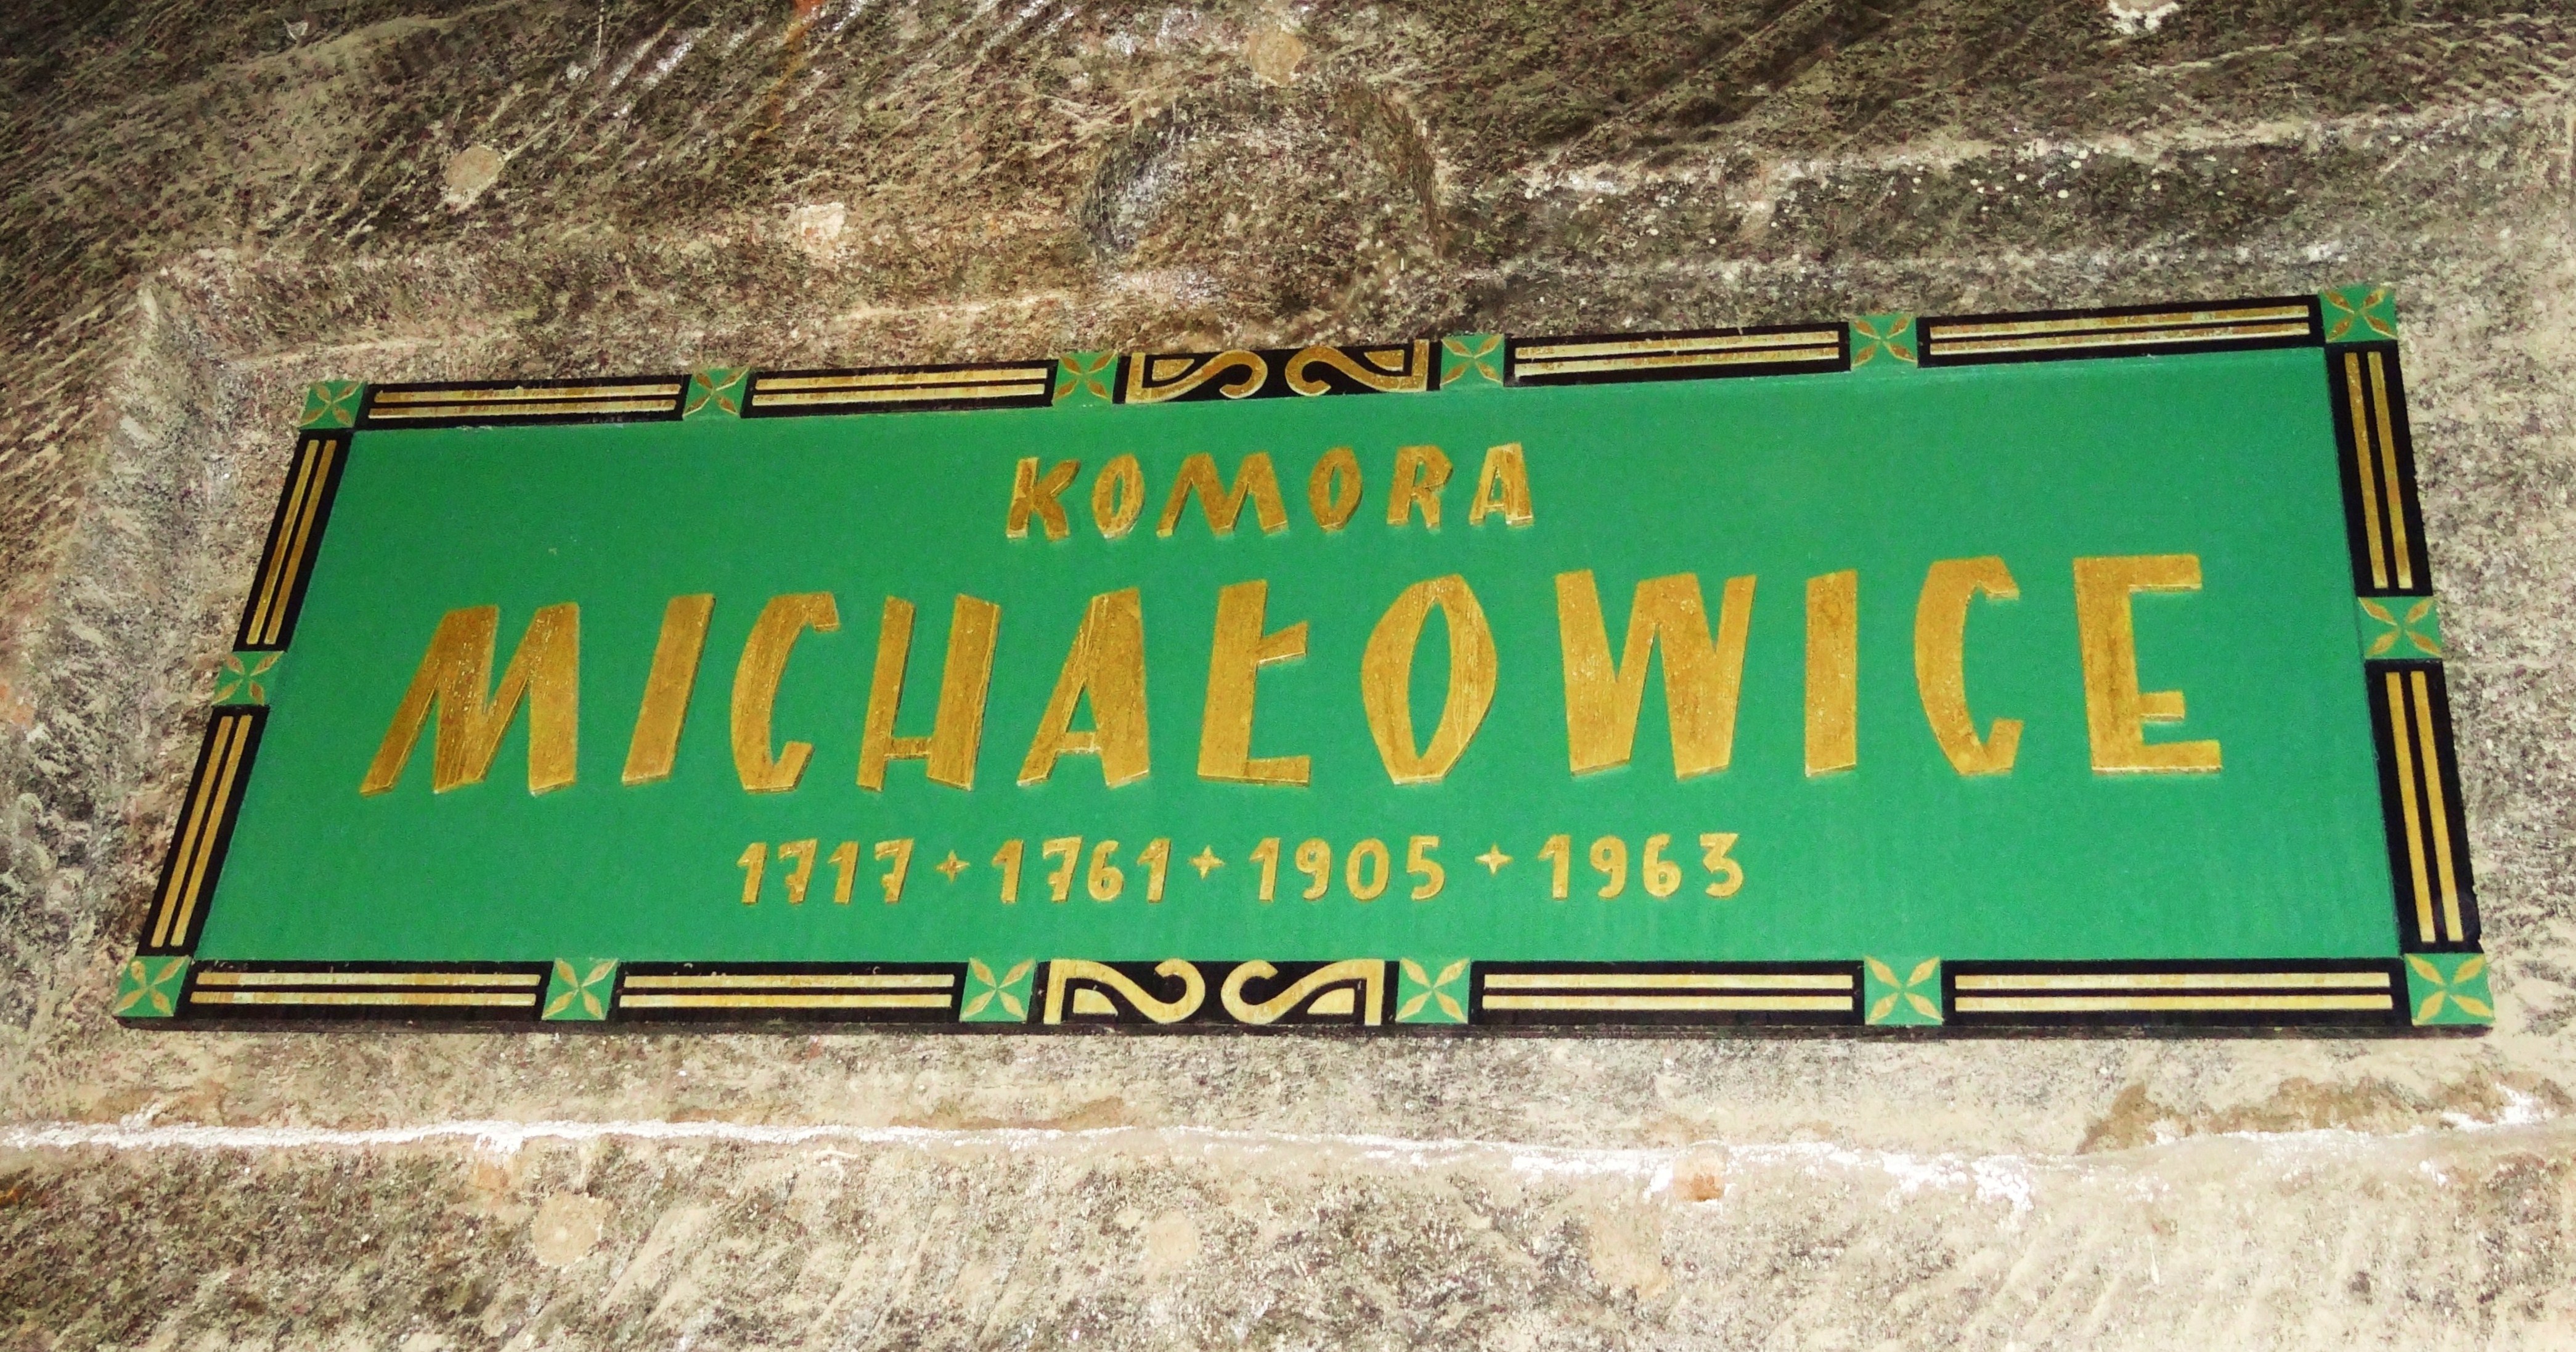 Foto: Komora Michałowice - Wieliczka (Lesser Poland Voivodeship), Polonia